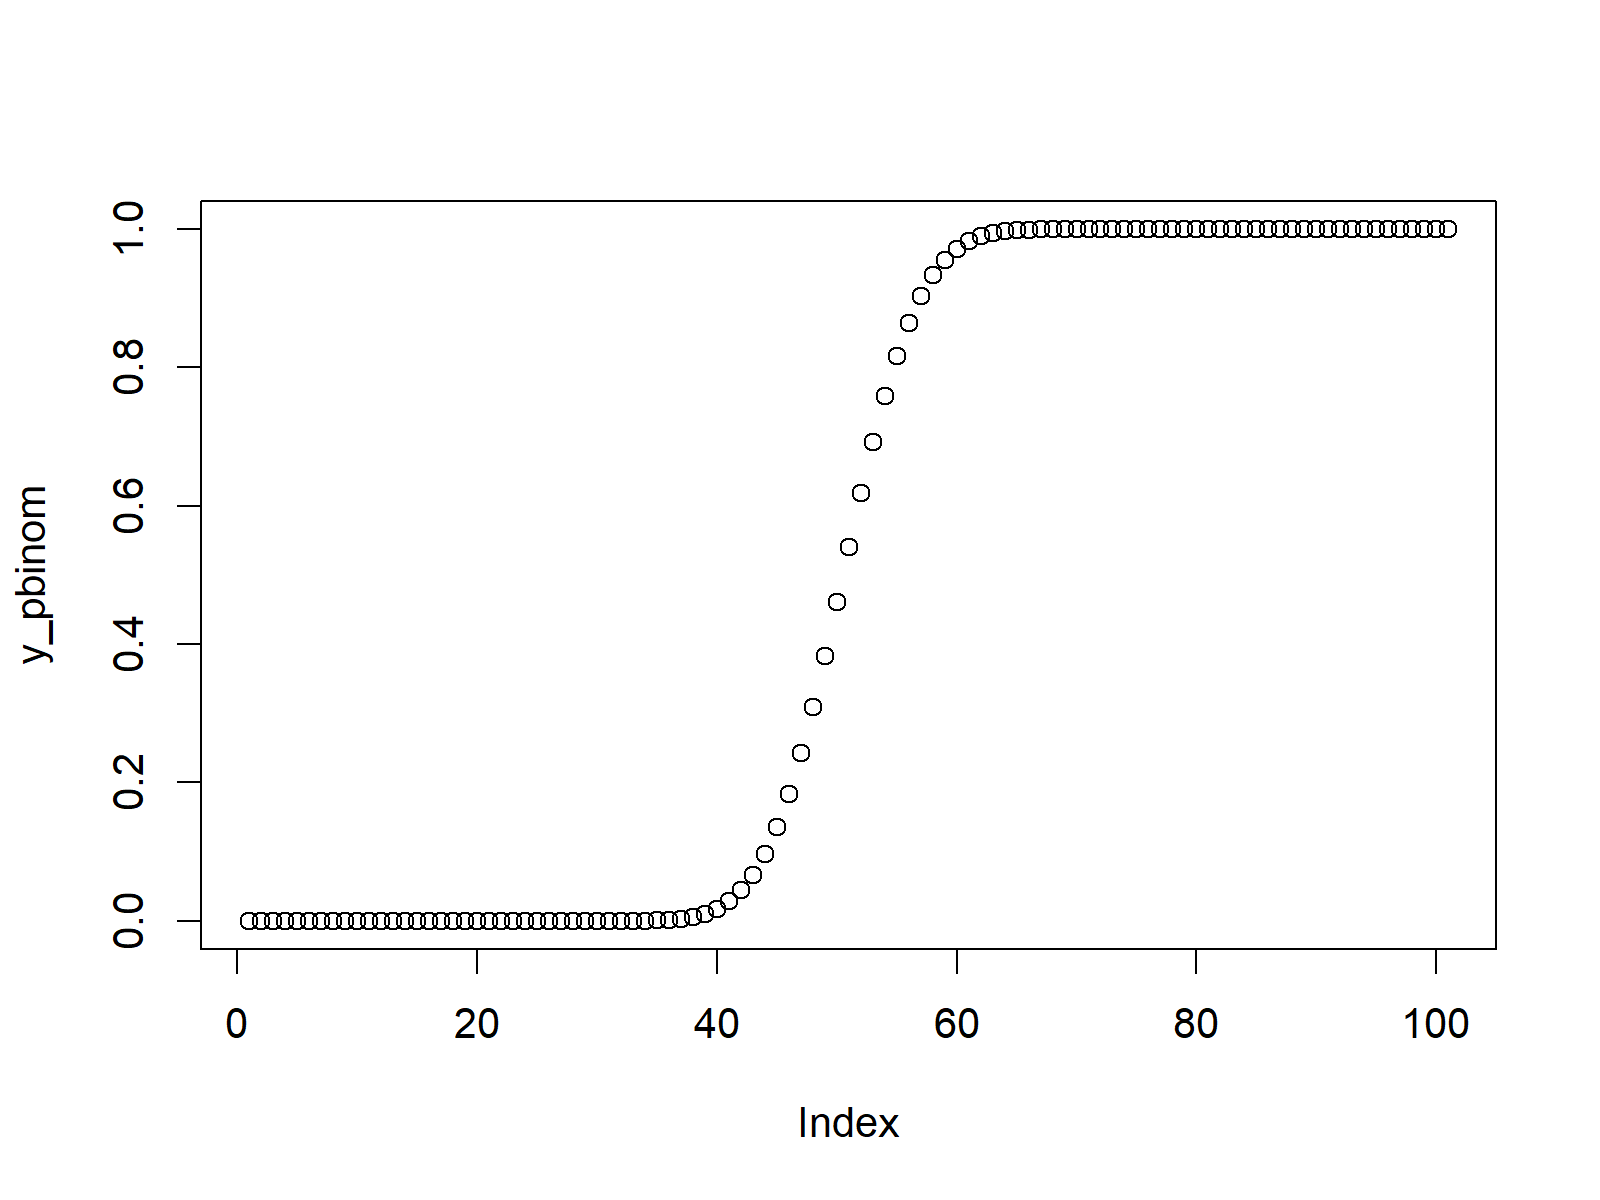 binomial cumulative distribution function in r programming language